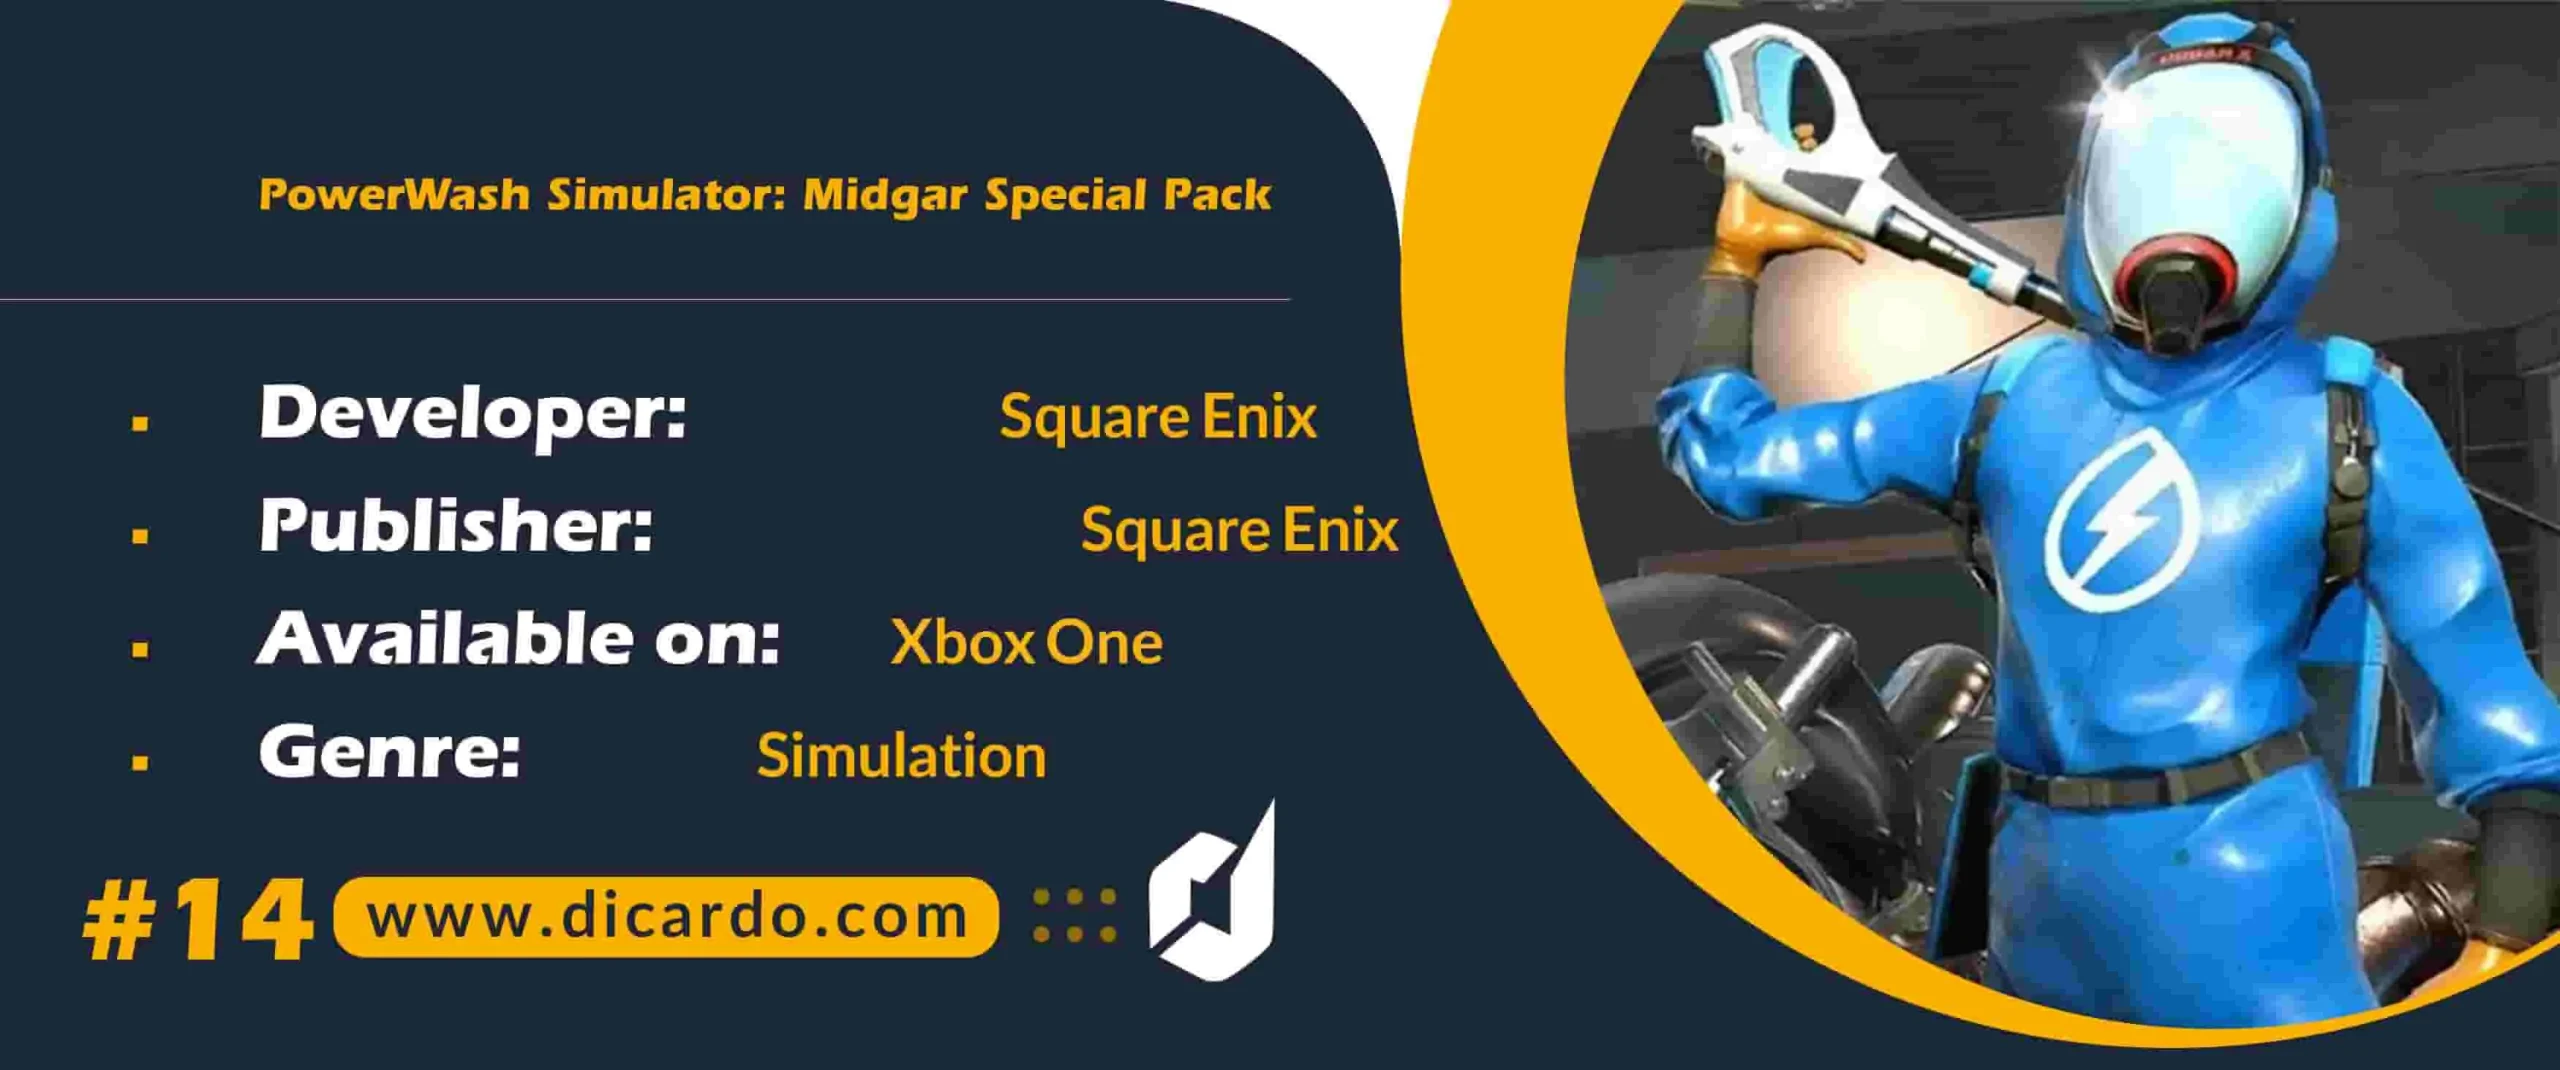 #14 پاور واش سیمولیشر میدگار اسپیشال پک PowerWash Simulator: Midgar Special Pack